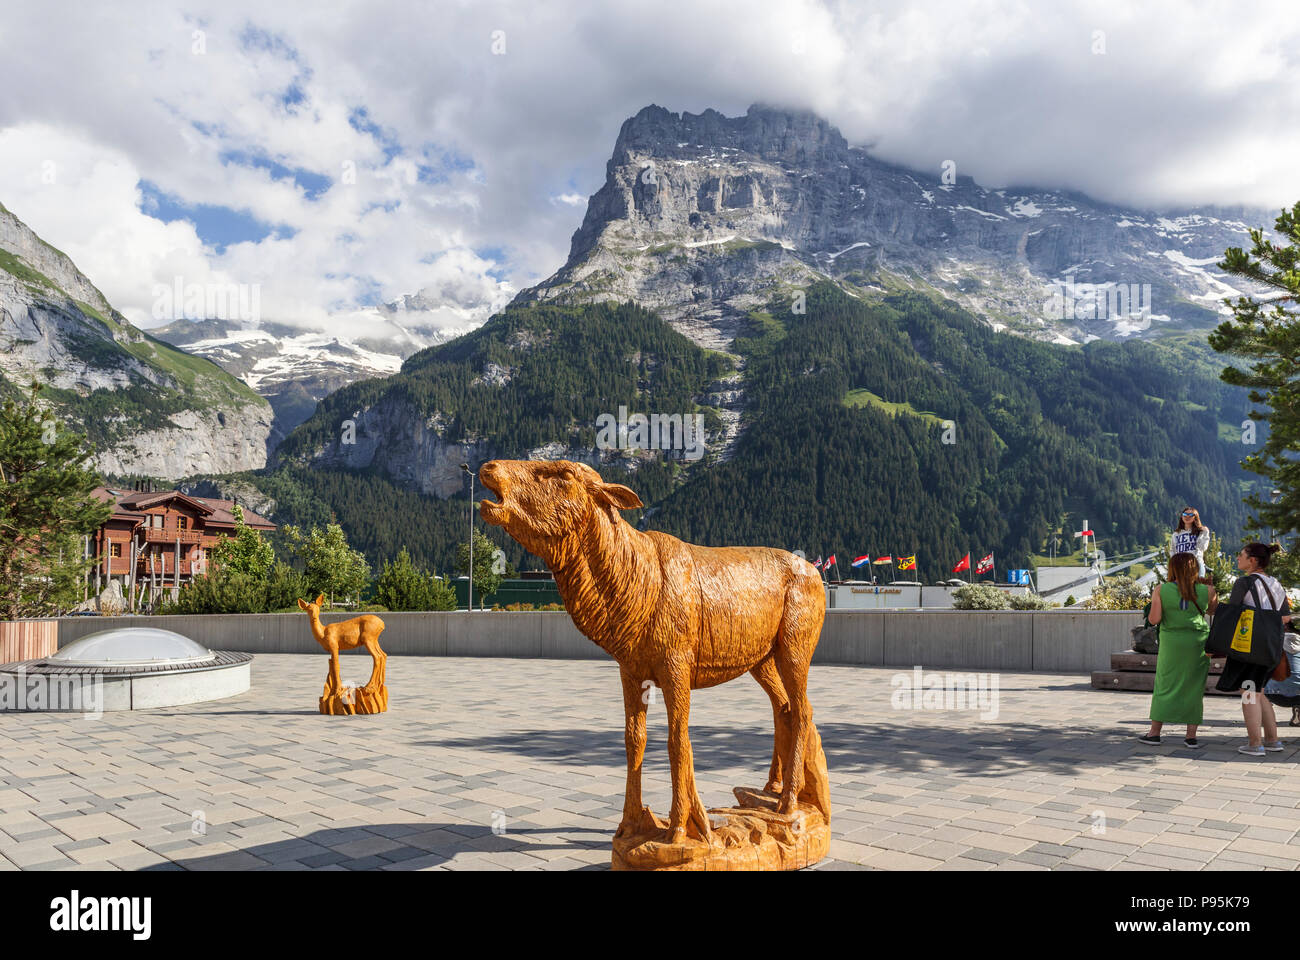 Legno scolpito la Statua di una mucca nel centro di Grindelwald, un popolare villaggio resort per vacanze Oberland bernese con il Monte Eiger in background Foto Stock